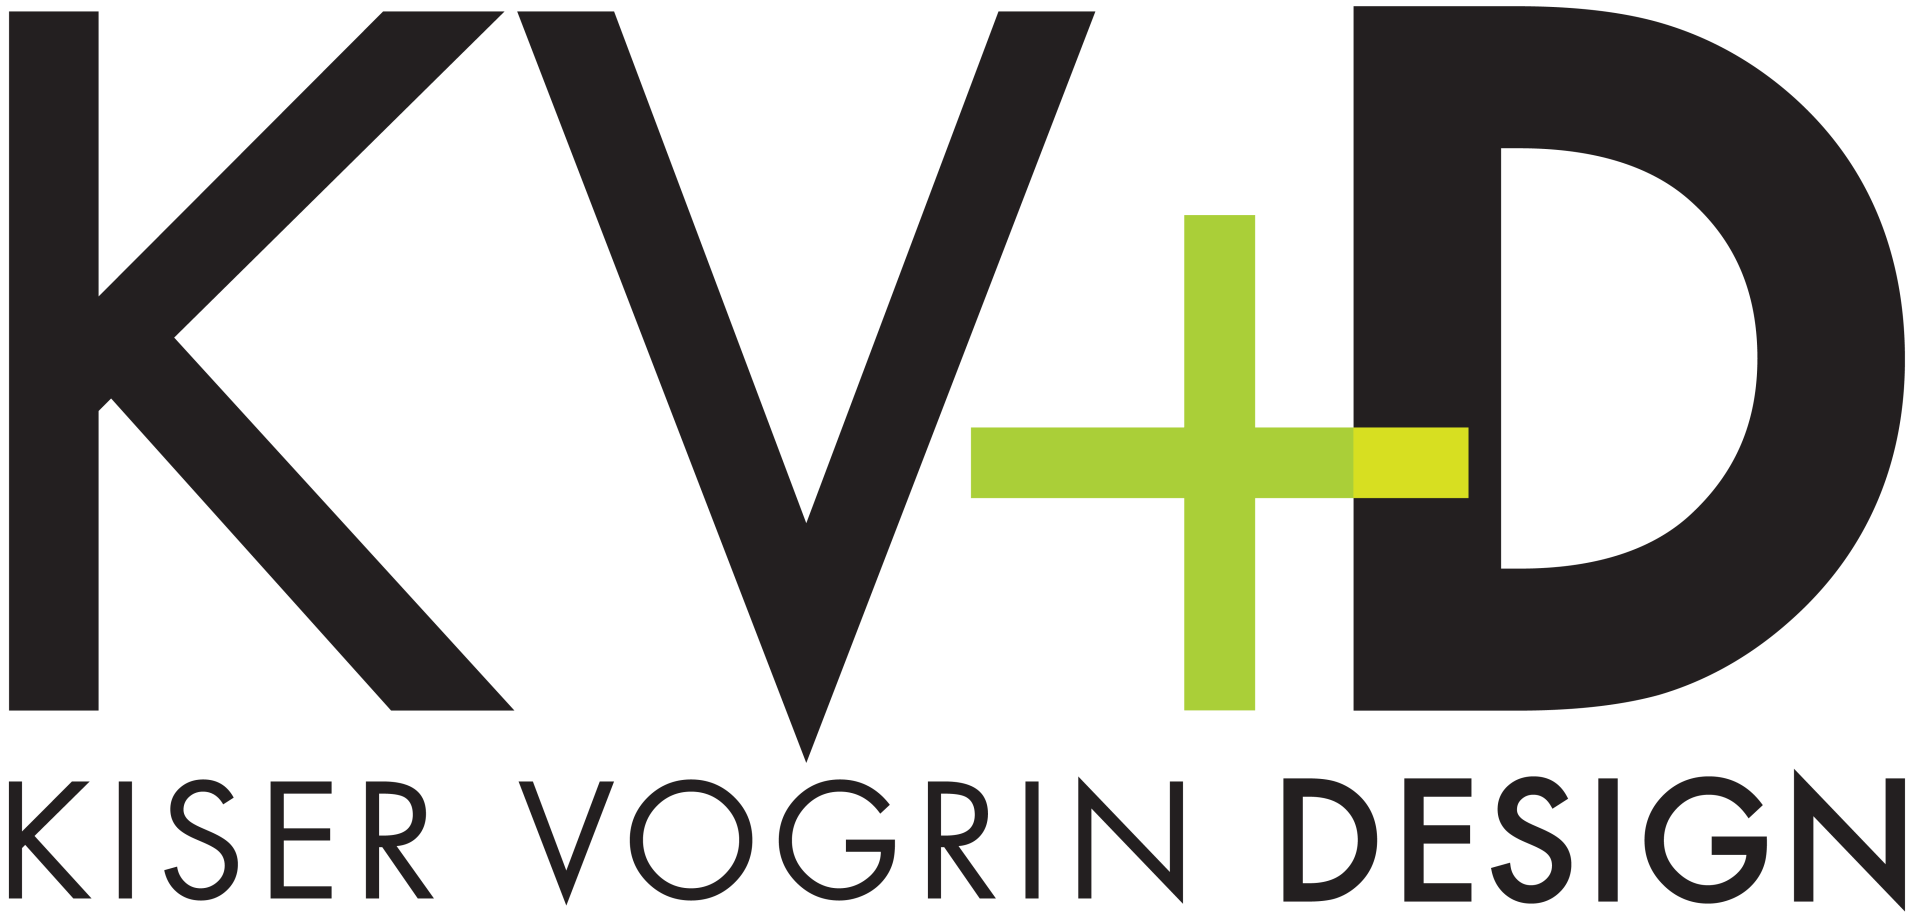 Kiser and Vogrin Design logo